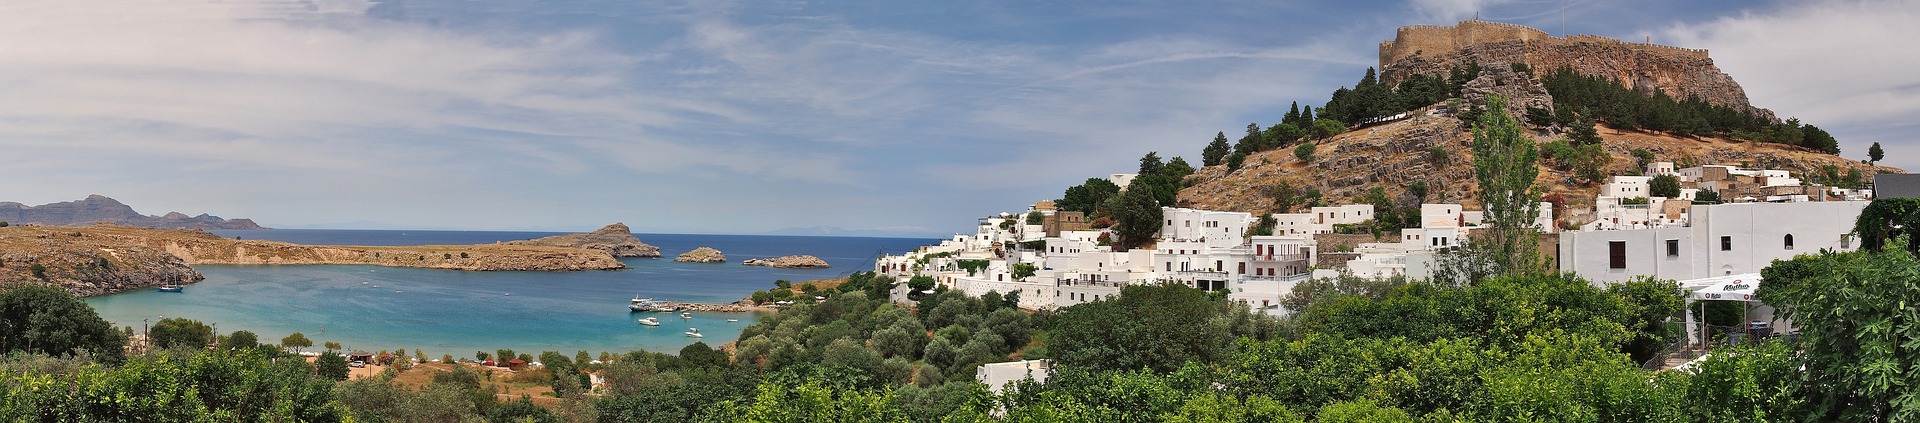 Apartment auf Rhodos ab 24,25€ 5 Nächte in Griechenland